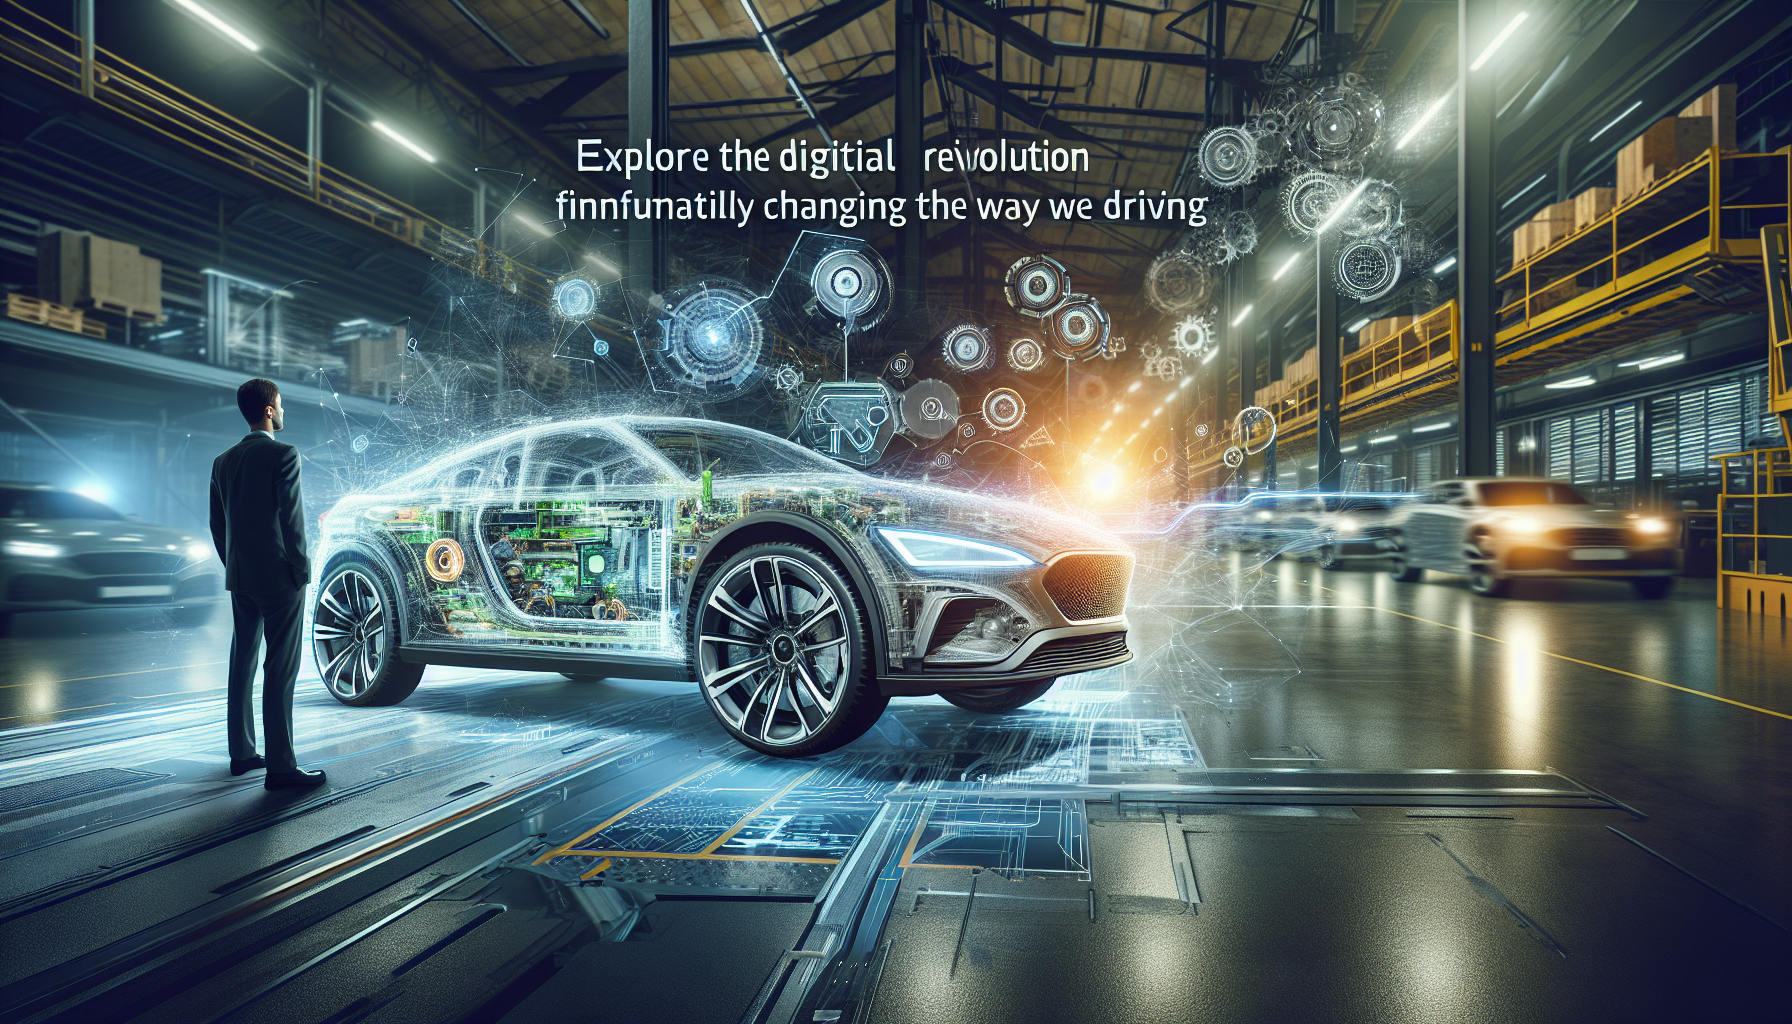 узнайте, как цифровые технологии произвели революцию в автомобильной промышленности вместе с Hyundai. революционные инновации, которые расширяют границы вождения и меняют представление об автомобиле.